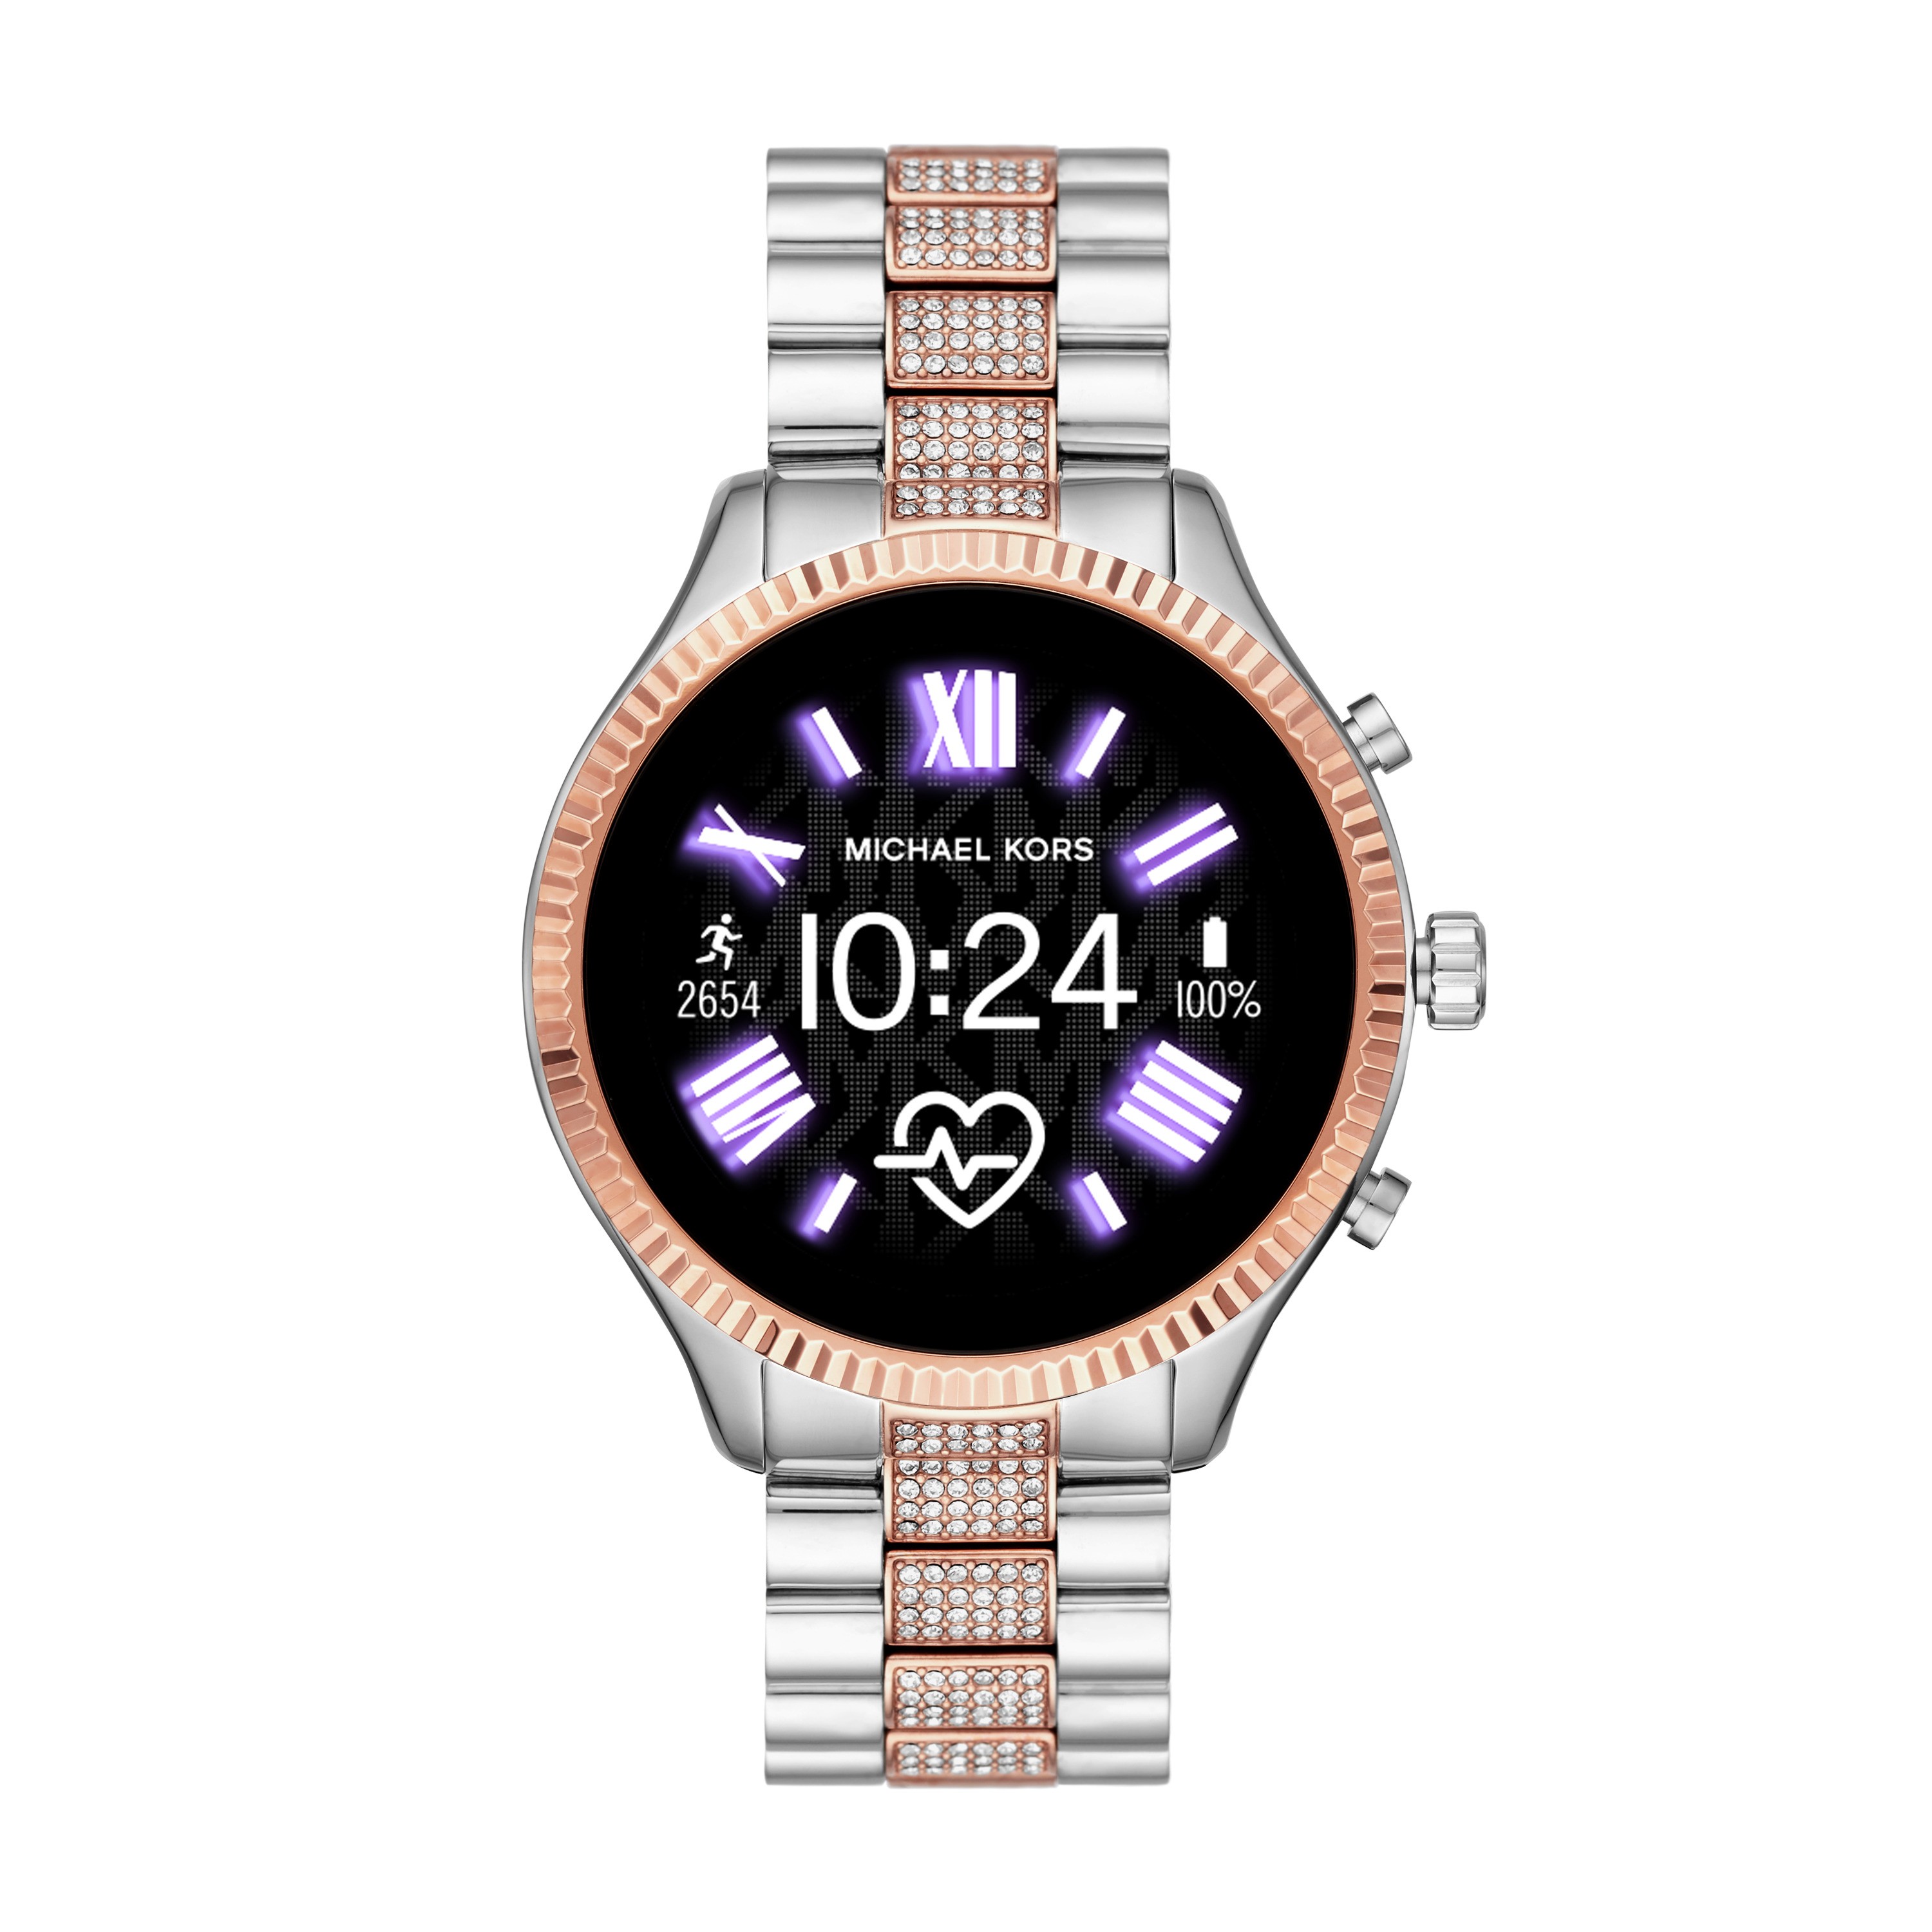 Michael Kors’ bejewelled MKT5080 smartwatch.